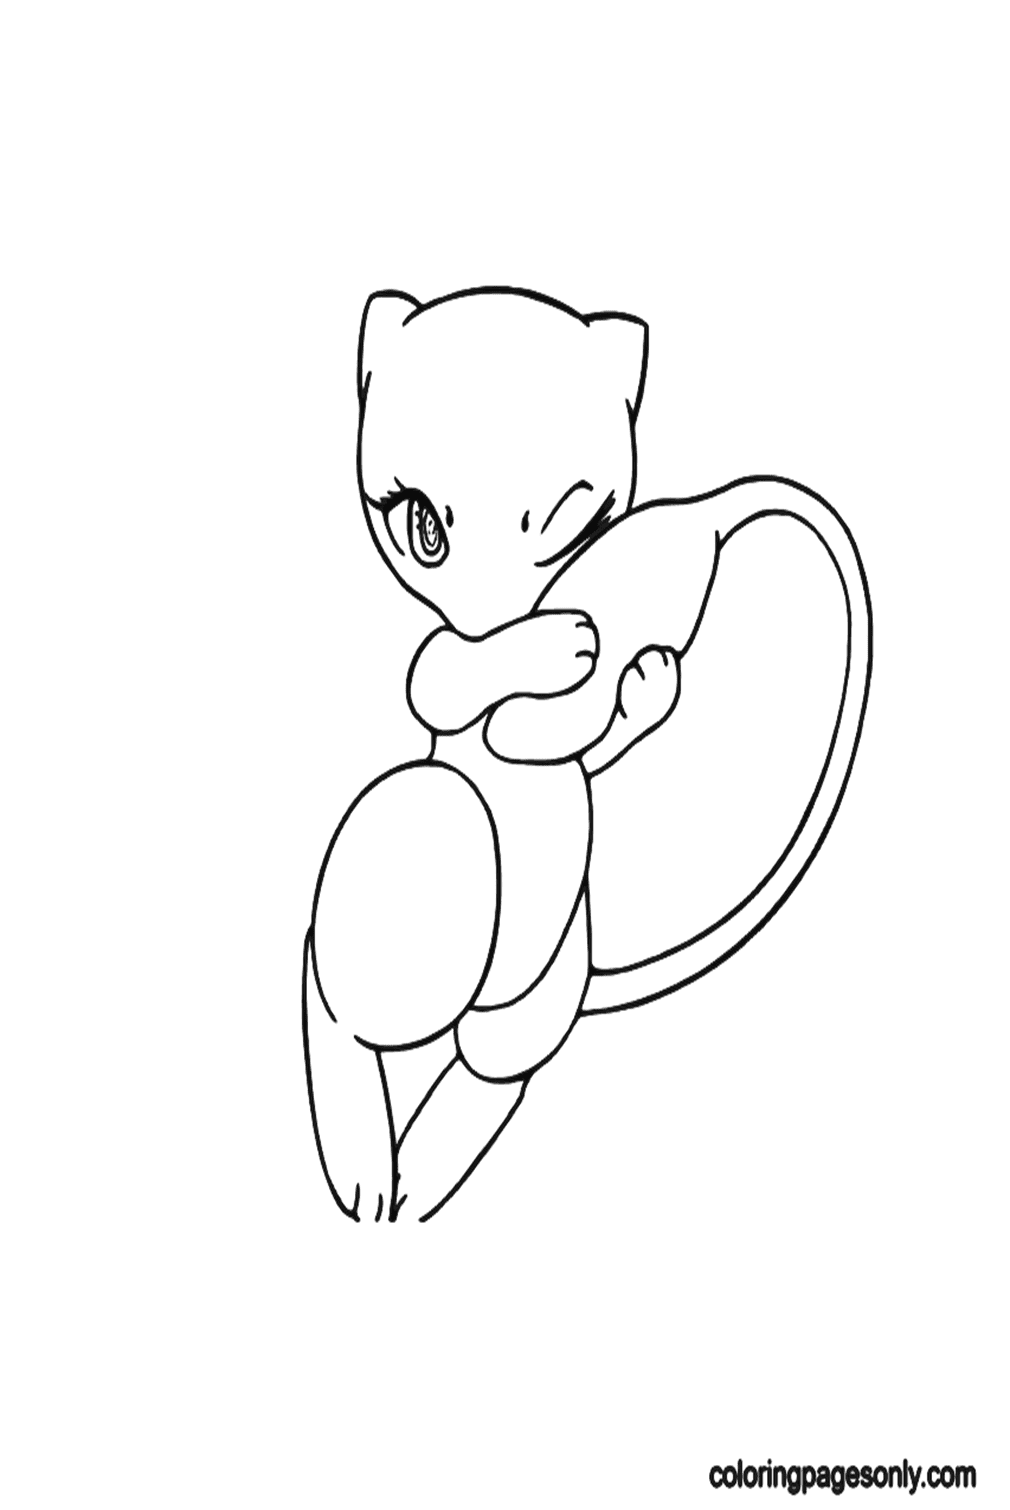 Imagens para Pokémon Mew grátis de Mew